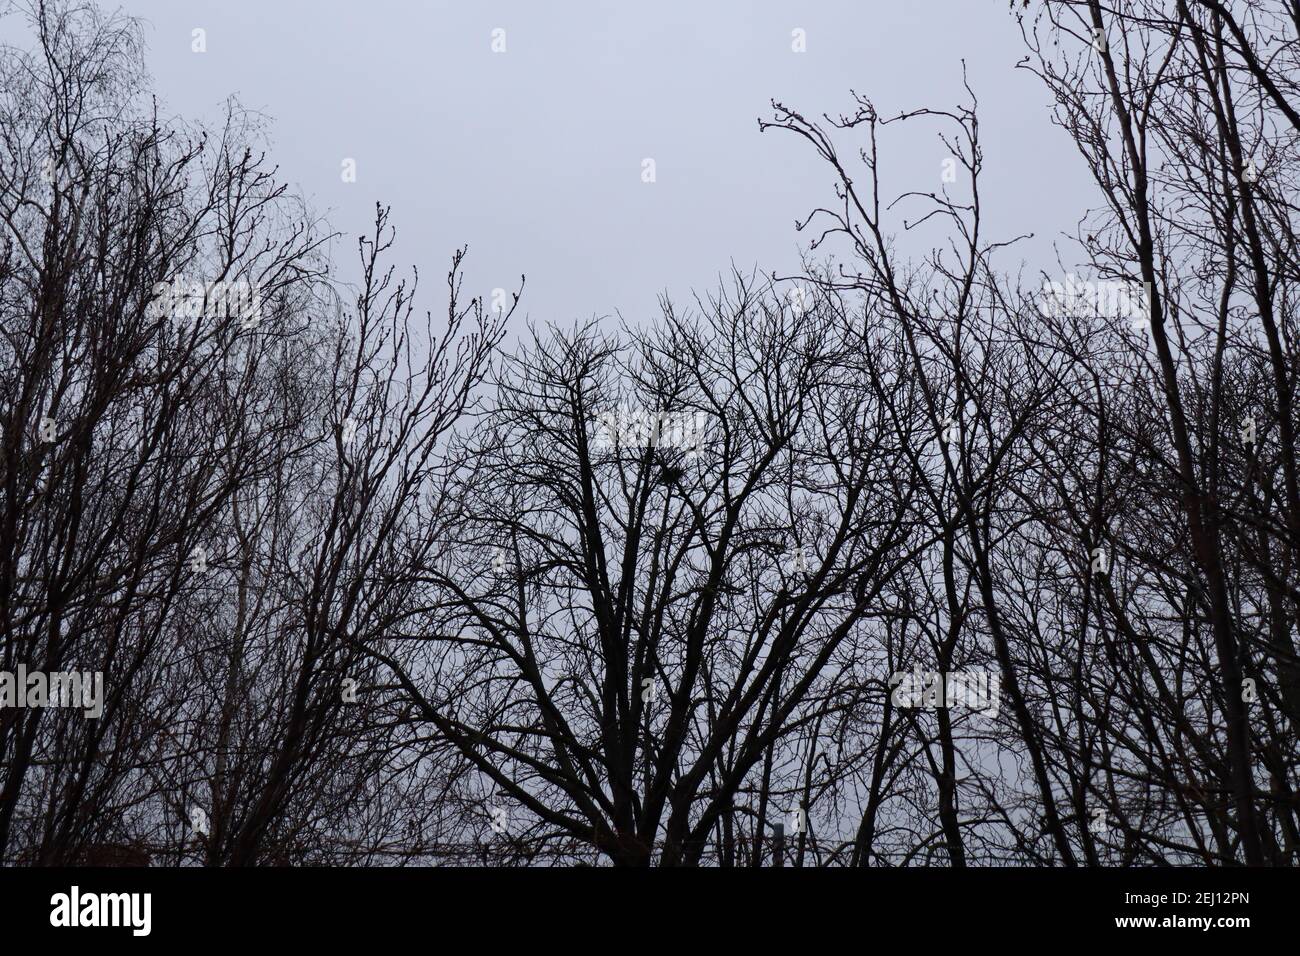 En regardant vers le haut, en regardant des branches d'arbre devant un ciel gris et brumeux créant une ambiance bleue. Banque D'Images